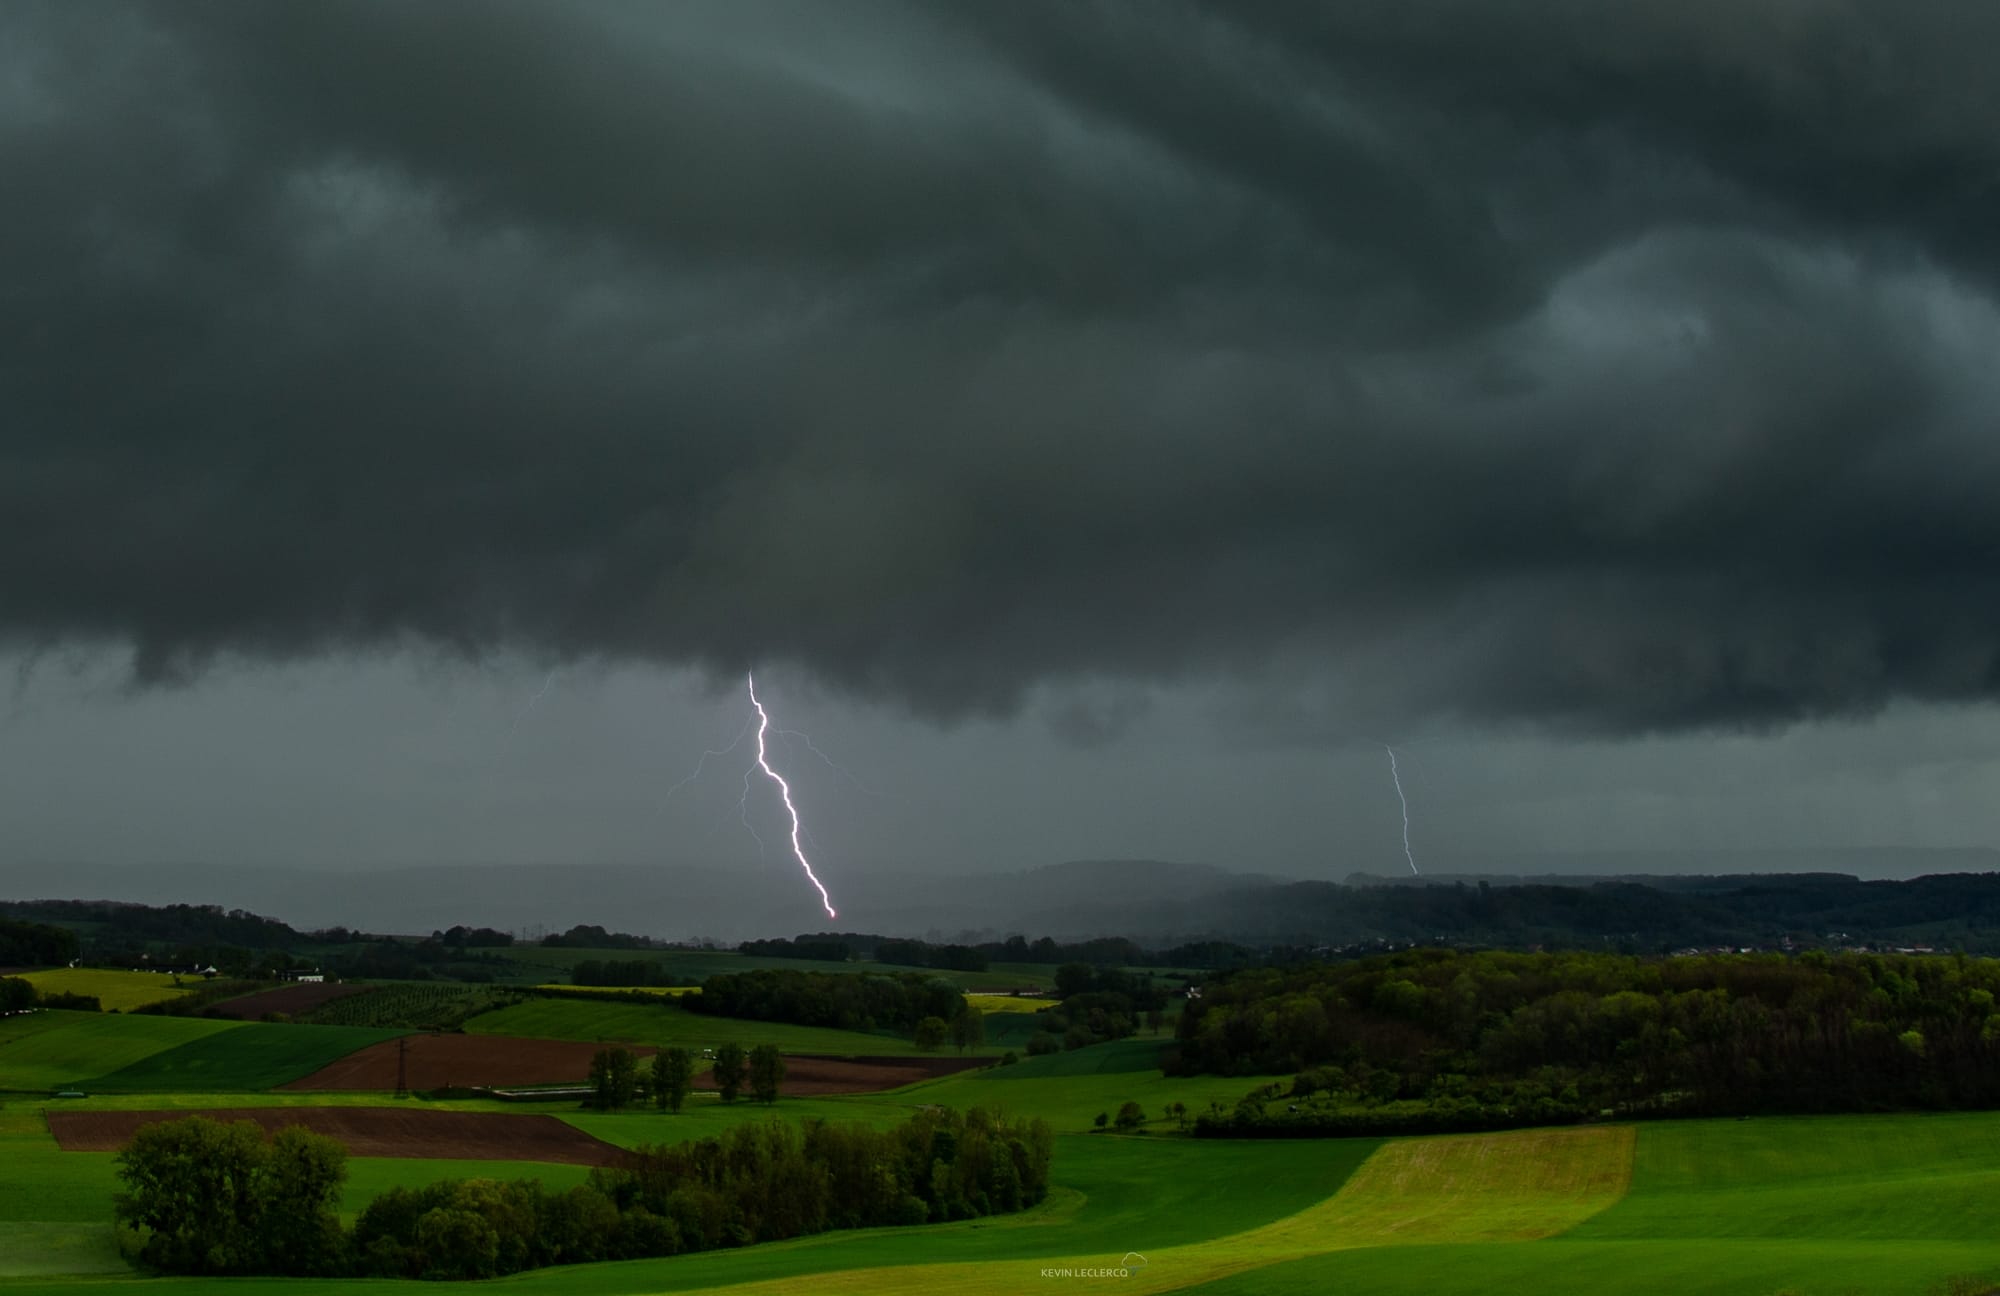 Journée orageuse a l'est de Nancy (54) avec plusieurs orages ! les 2 derniers auront été costaud avec grêle et foudre fréquente ! vue ici sur Dombasle sur Meurthe (54) - 19/05/2021 16:40 - Kevin Leclercq